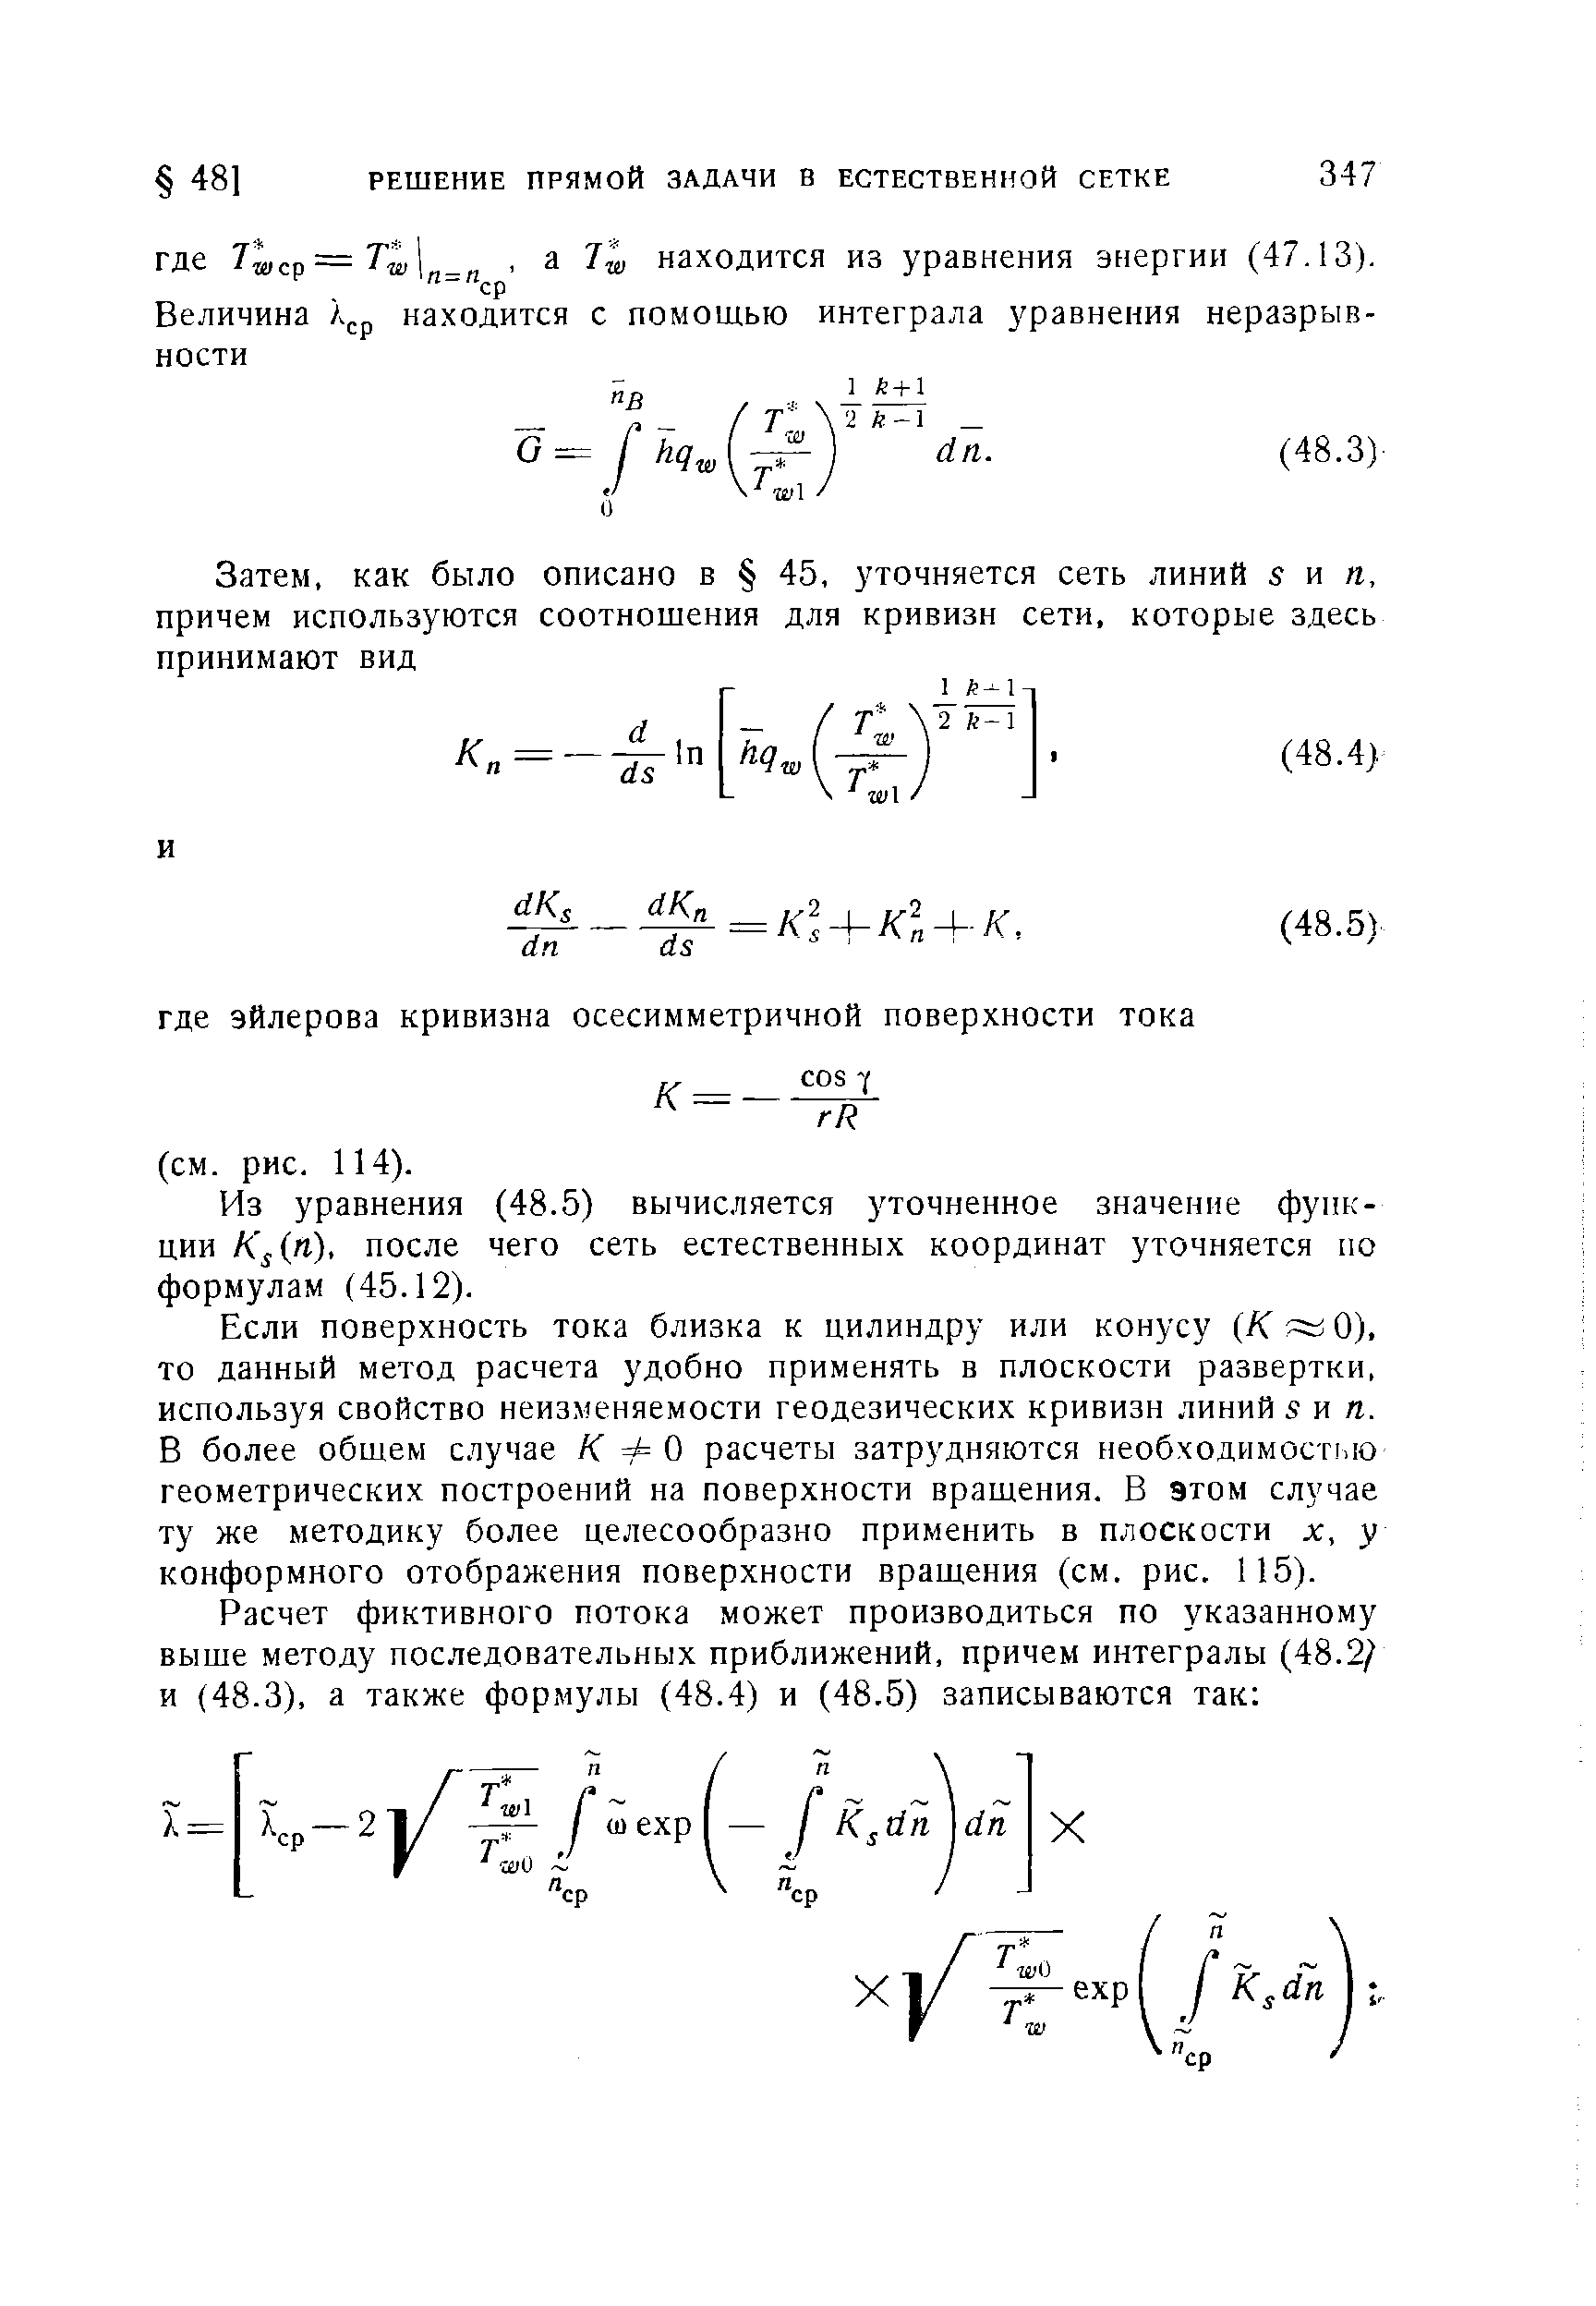 Из уравнения (48.5) вычисляется уточненное значение функции К п), после чего сеть естественных координат уточняется по формулам (45.12).
